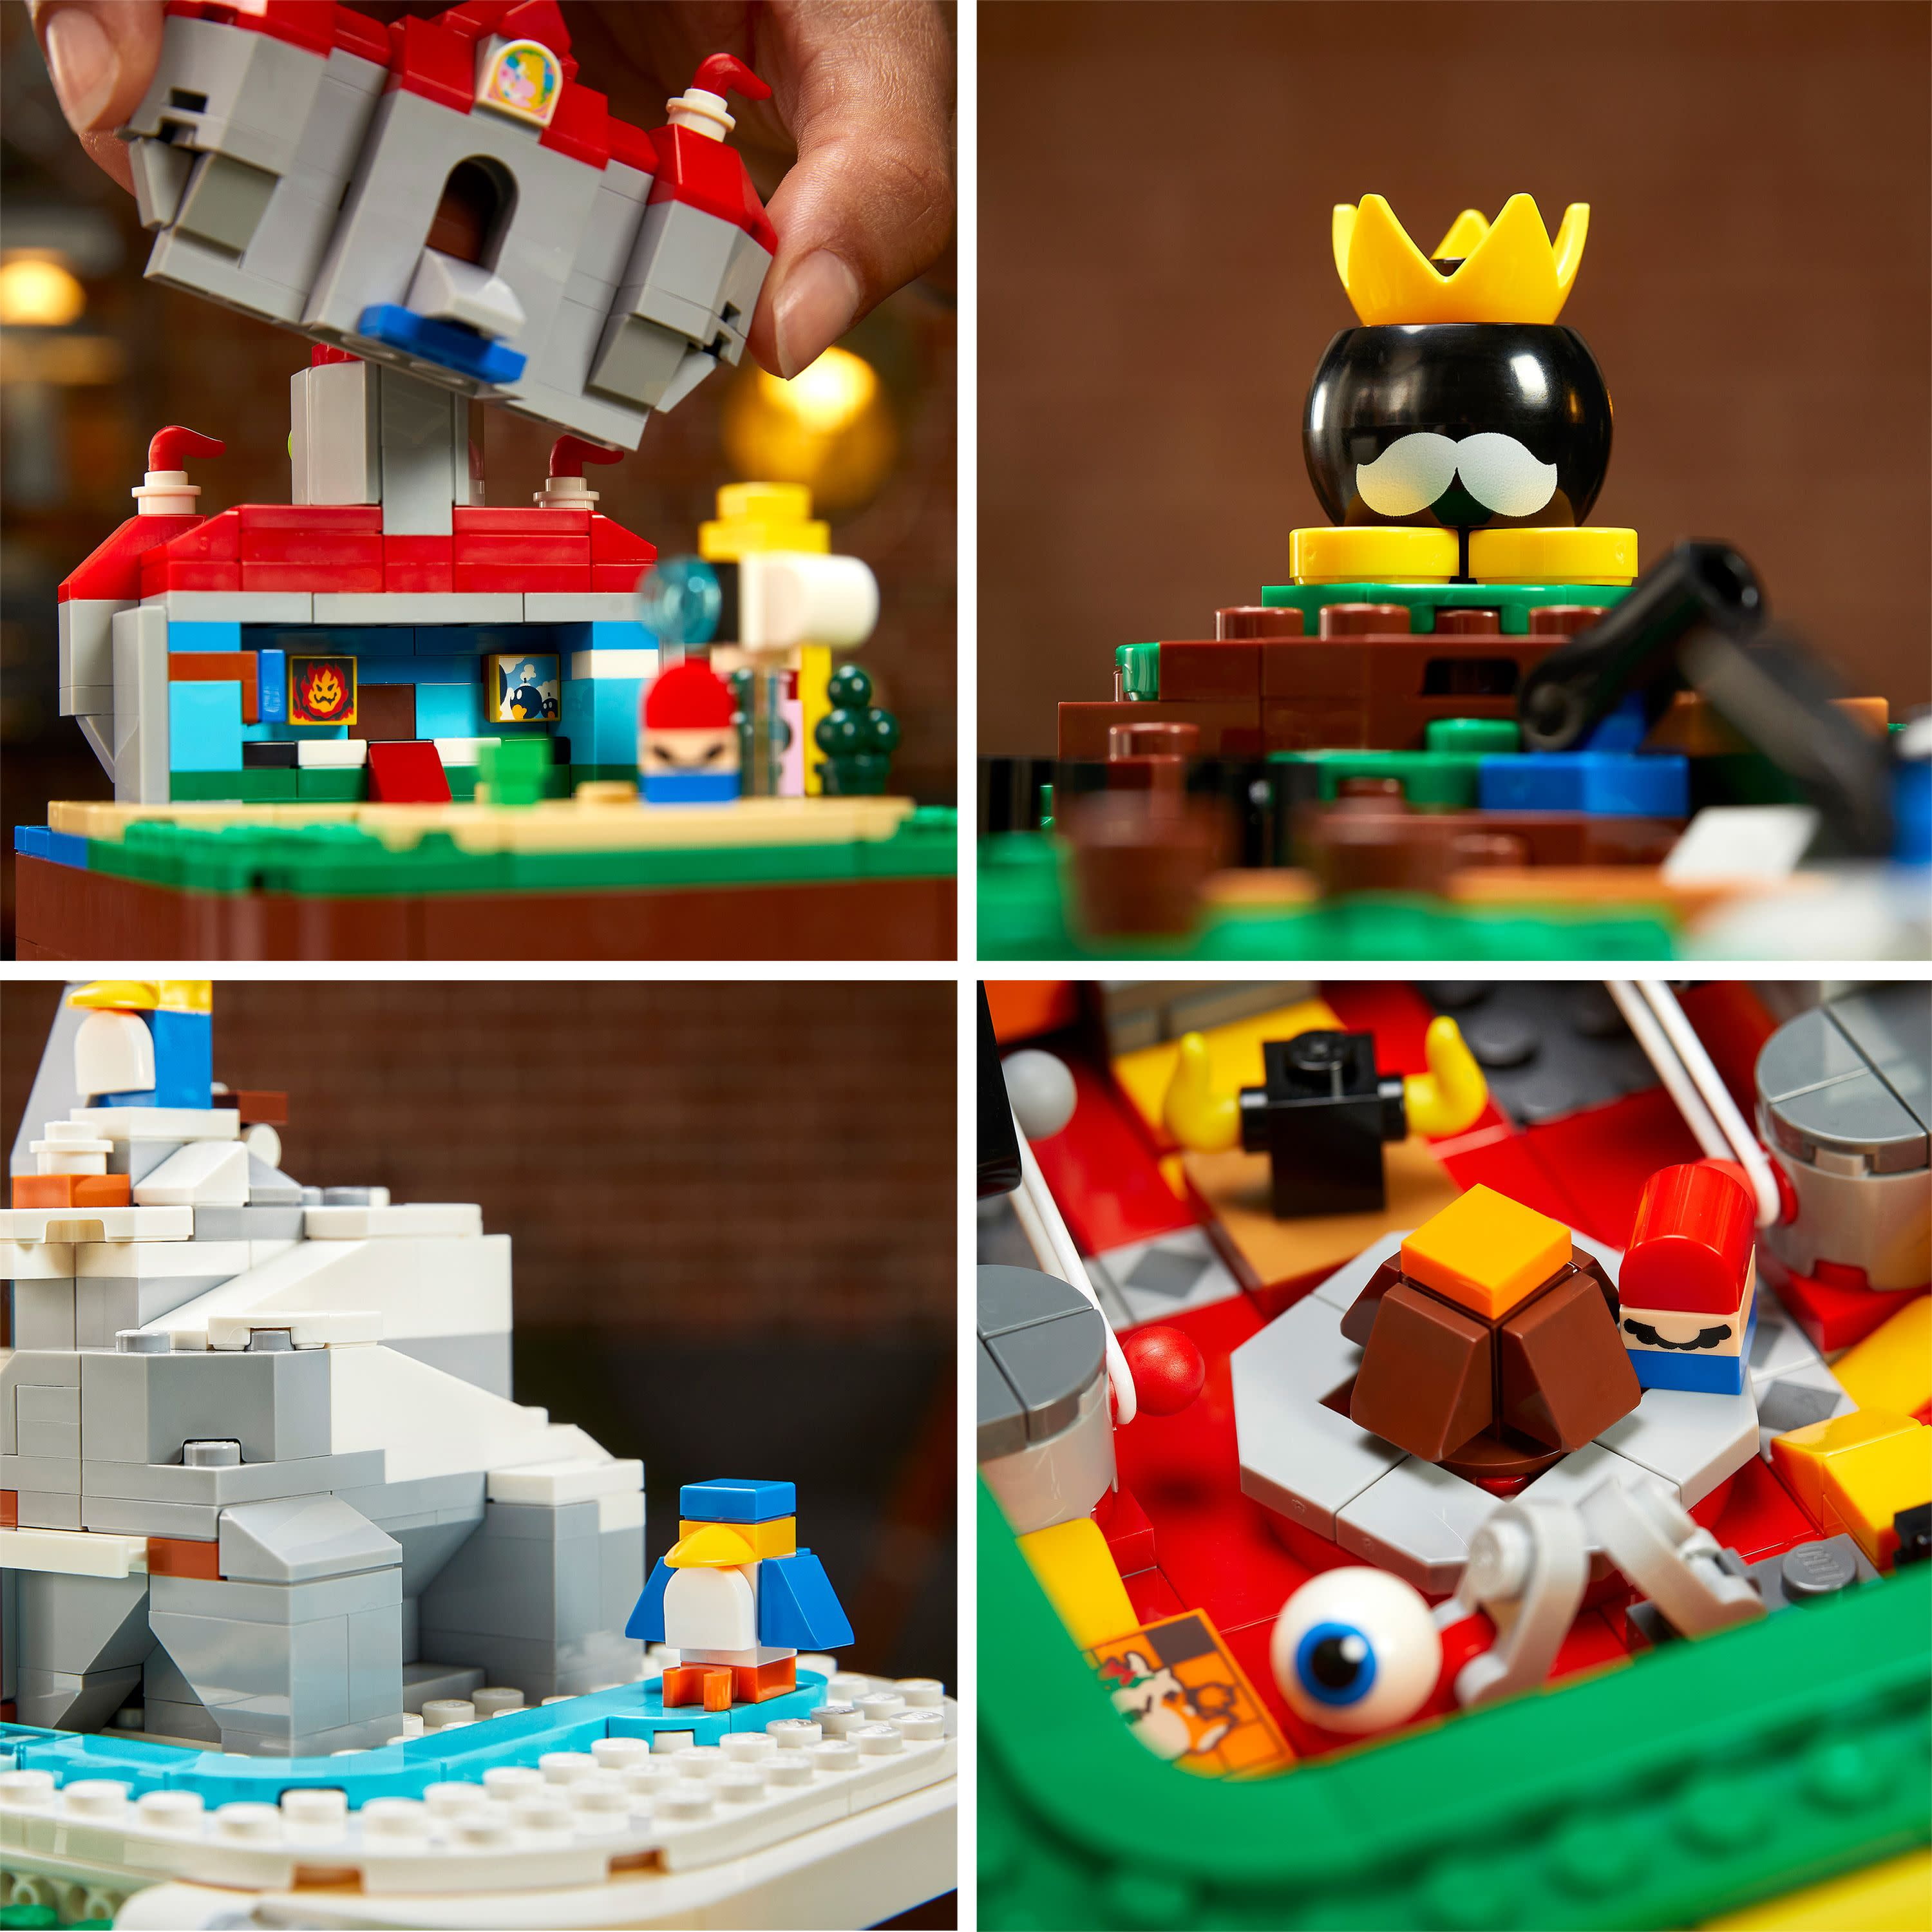  Lego Super Mario Lego(R) Super Mario 64(TM) Hatena Block 71395  Toy Block Videojuego Niños Niñas Adulto Lego : Todo lo demás